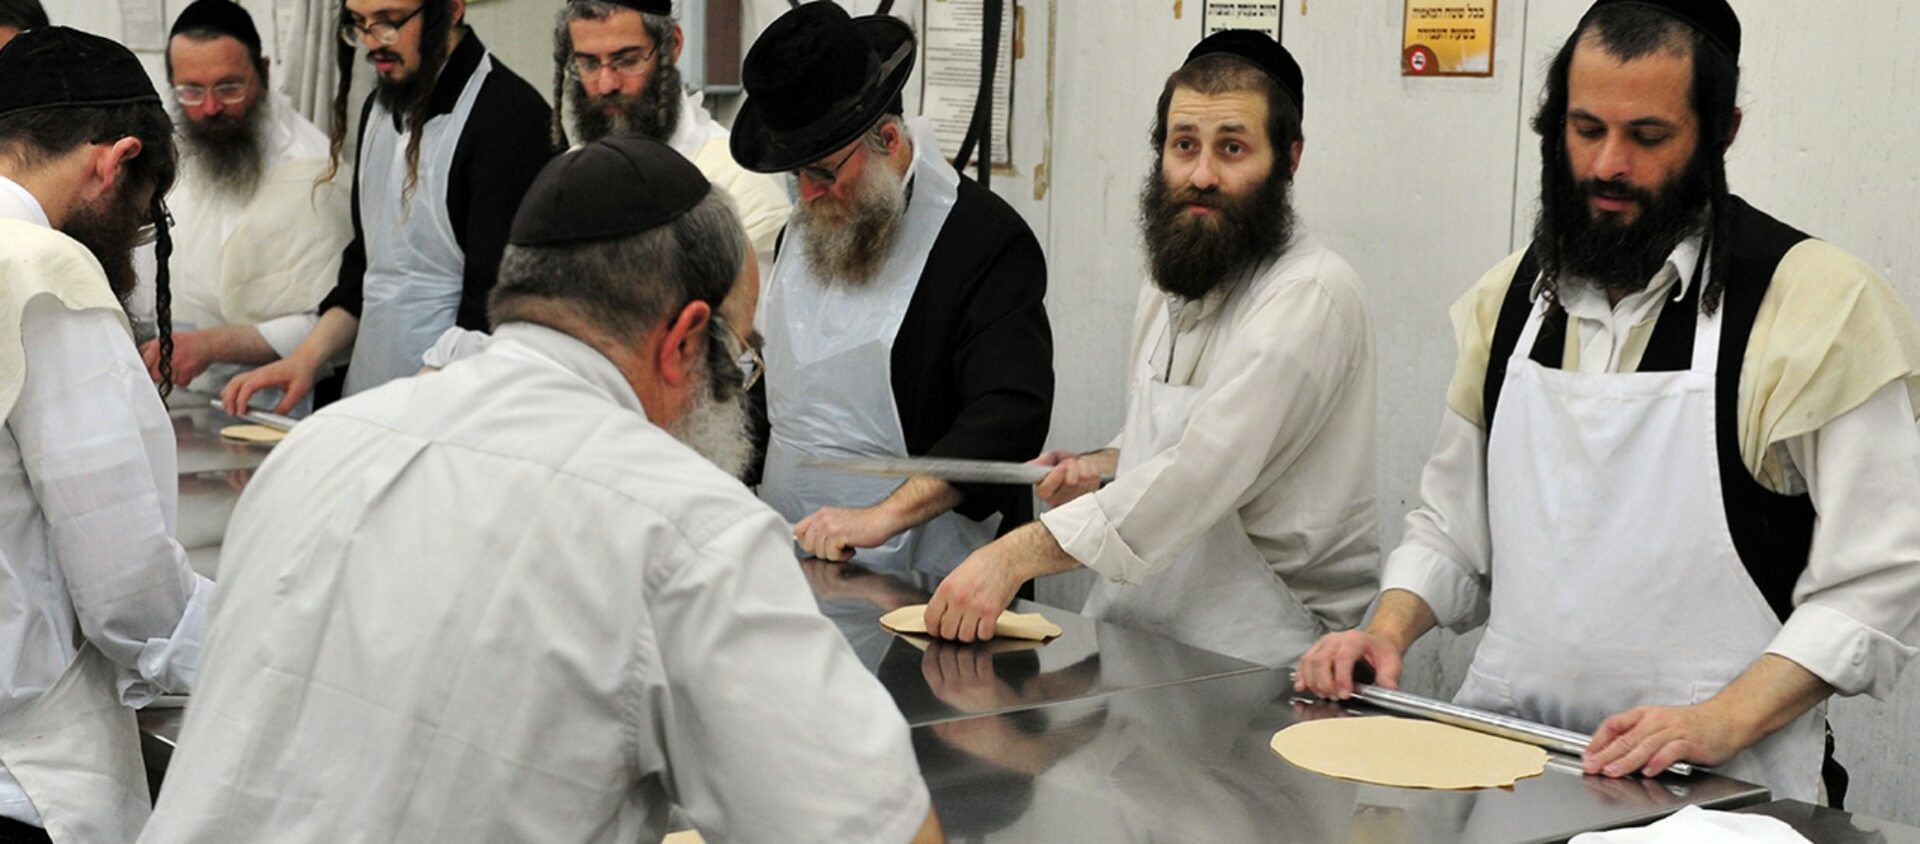 Confection de pain azyme par des juifs orthodoxes suivant des règles strictes pour empêcher la fermentation de la pâte © Shutterstock - ChameleonsEye  